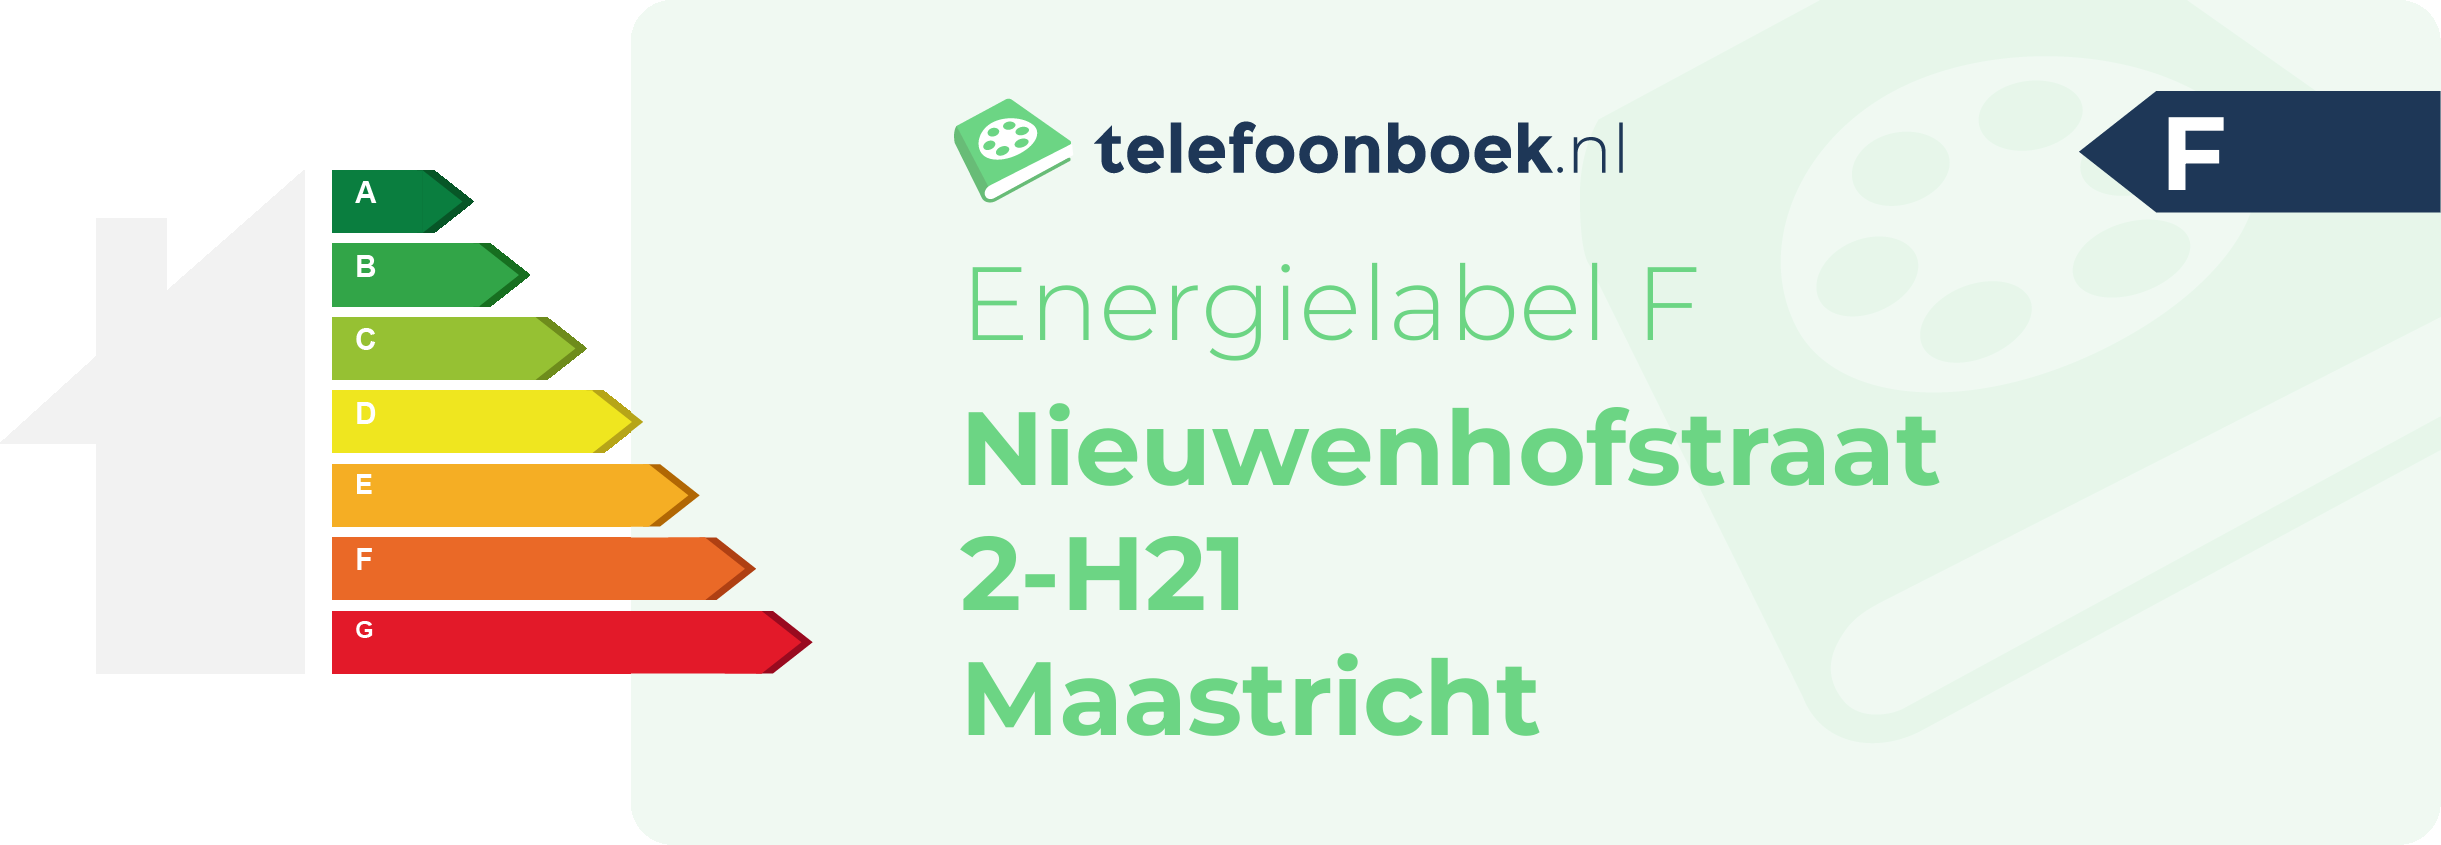 Energielabel Nieuwenhofstraat 2-H21 Maastricht